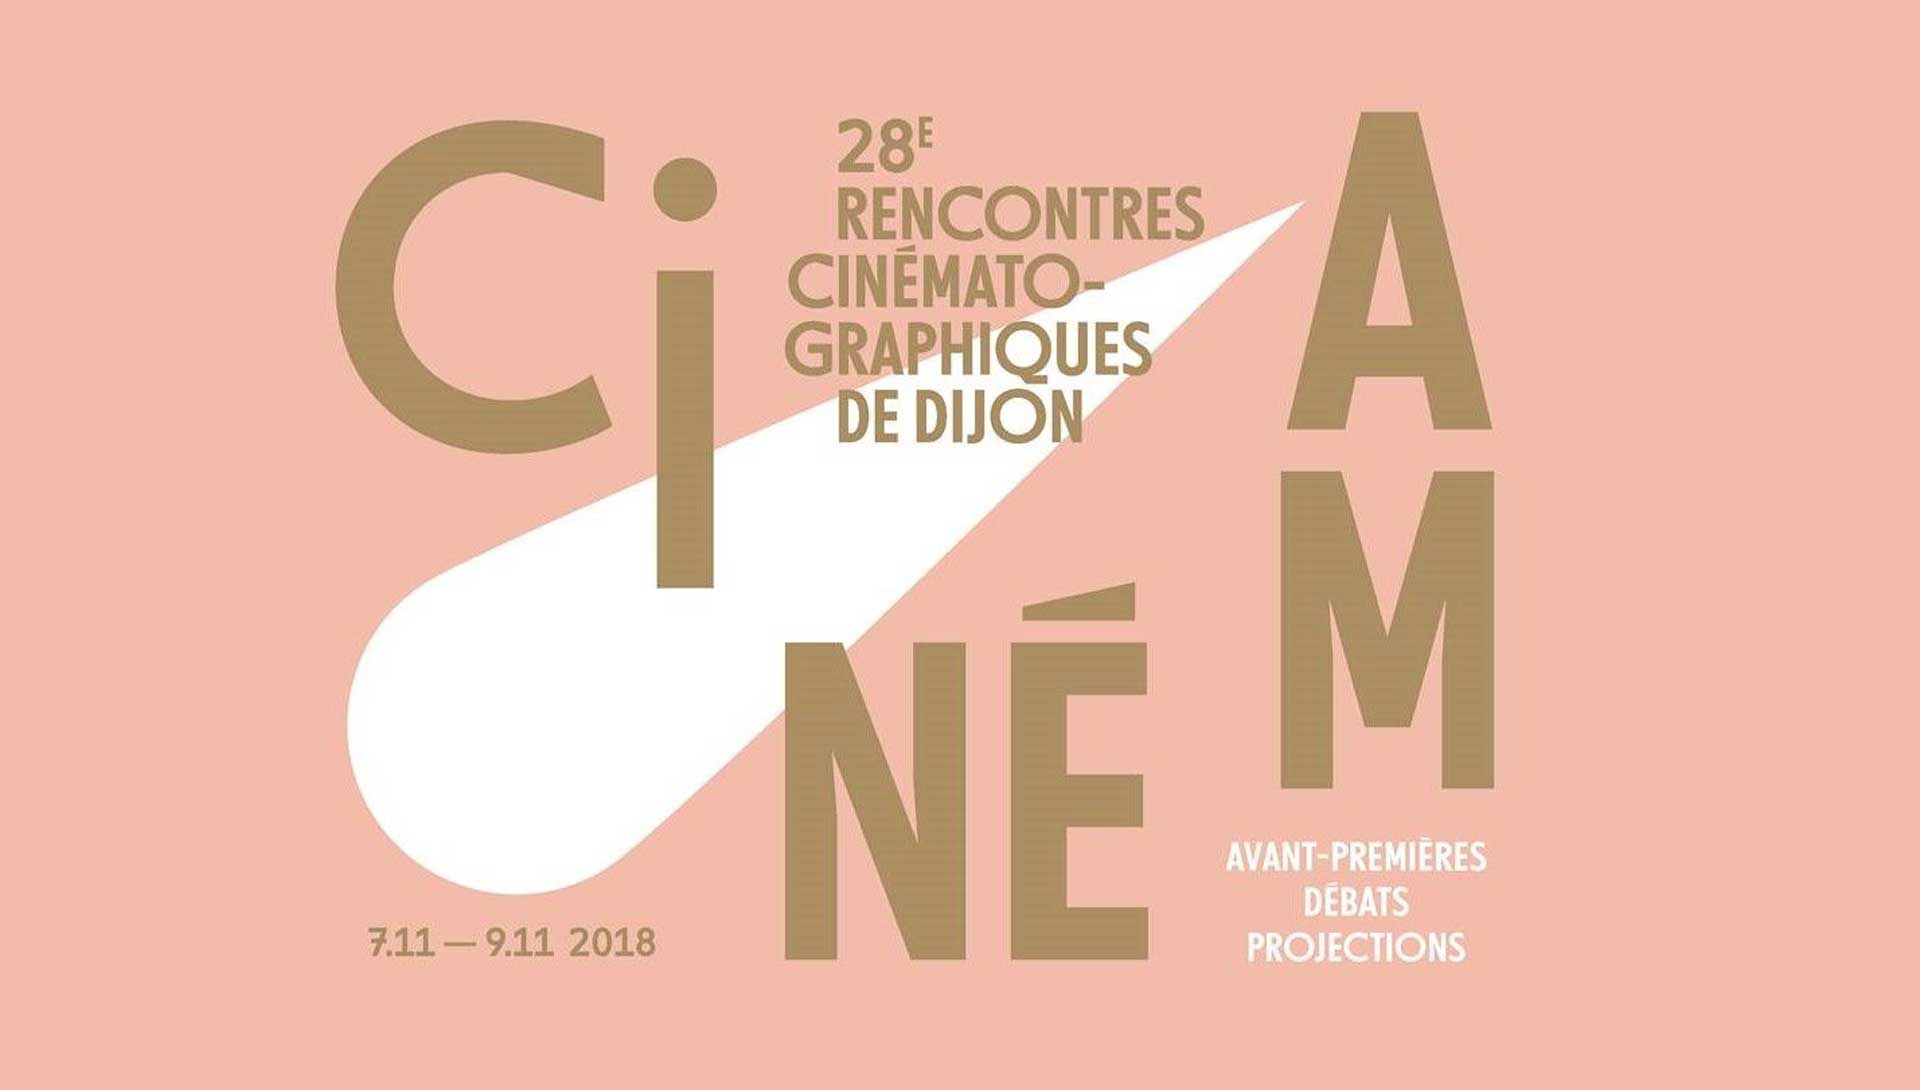 Les Rencontres cinématographiques de Dijon 2018